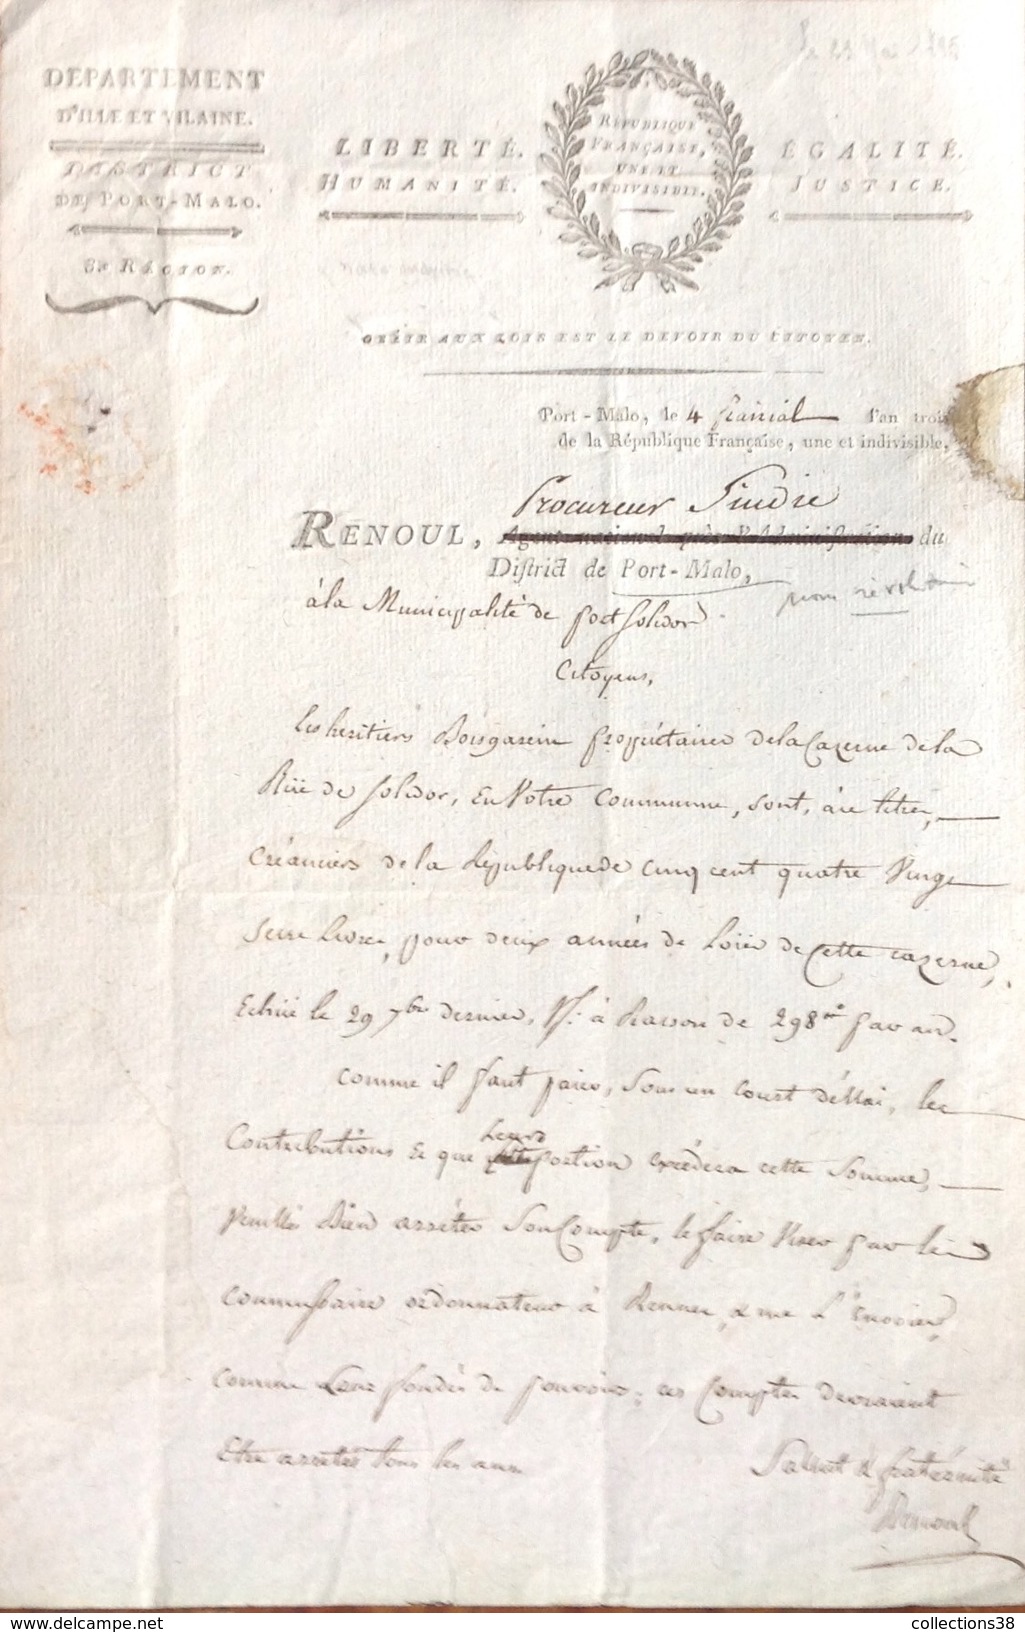 Bretagne - St-Malo Demande De Paiement Du Loyer De La Caserne - Signé Renoul - Documents Historiques